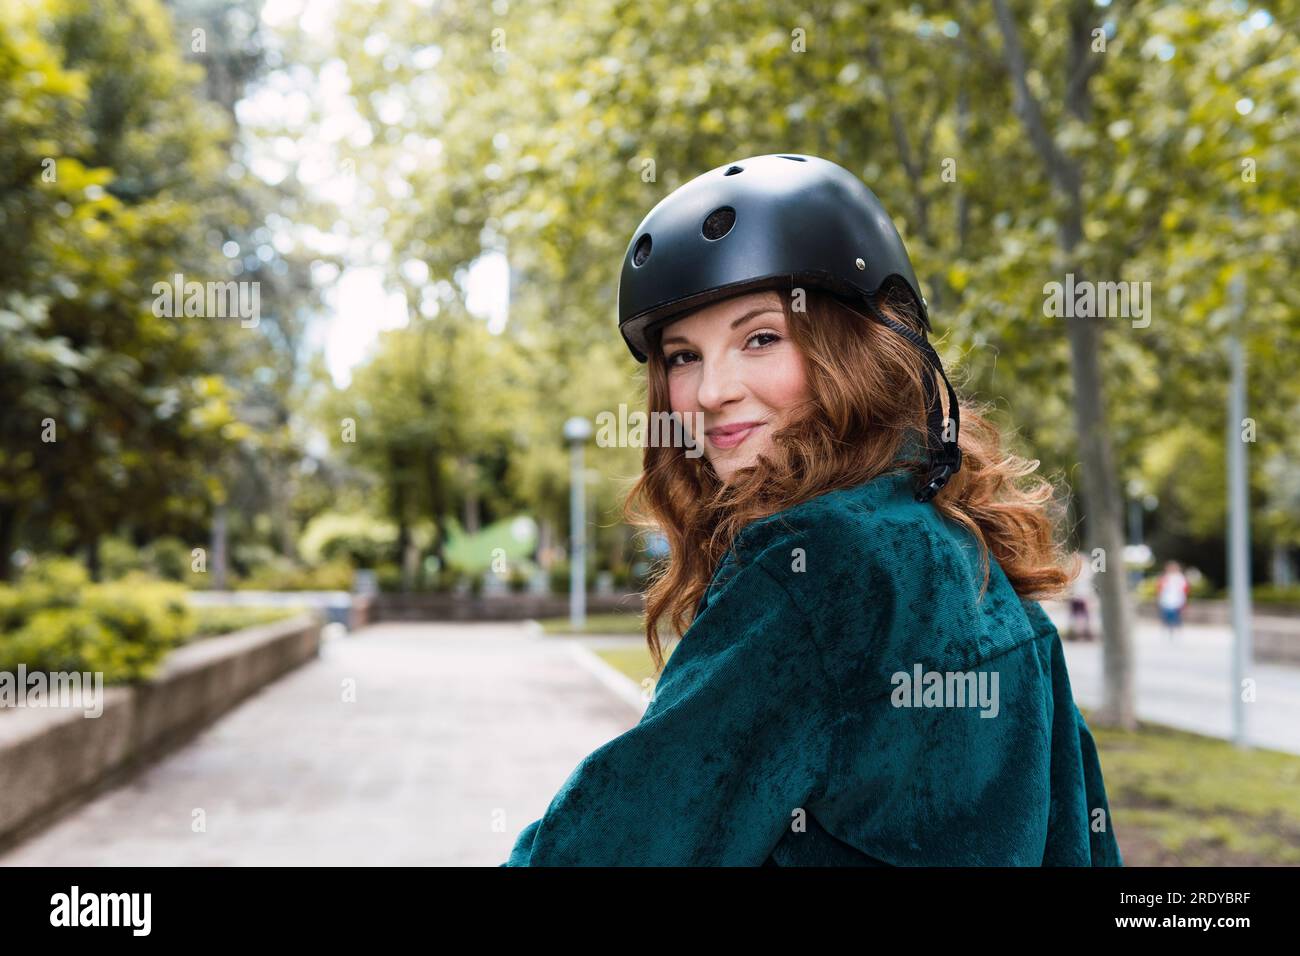 Lächelnde junge Frau mit Helm im Park Stockfoto